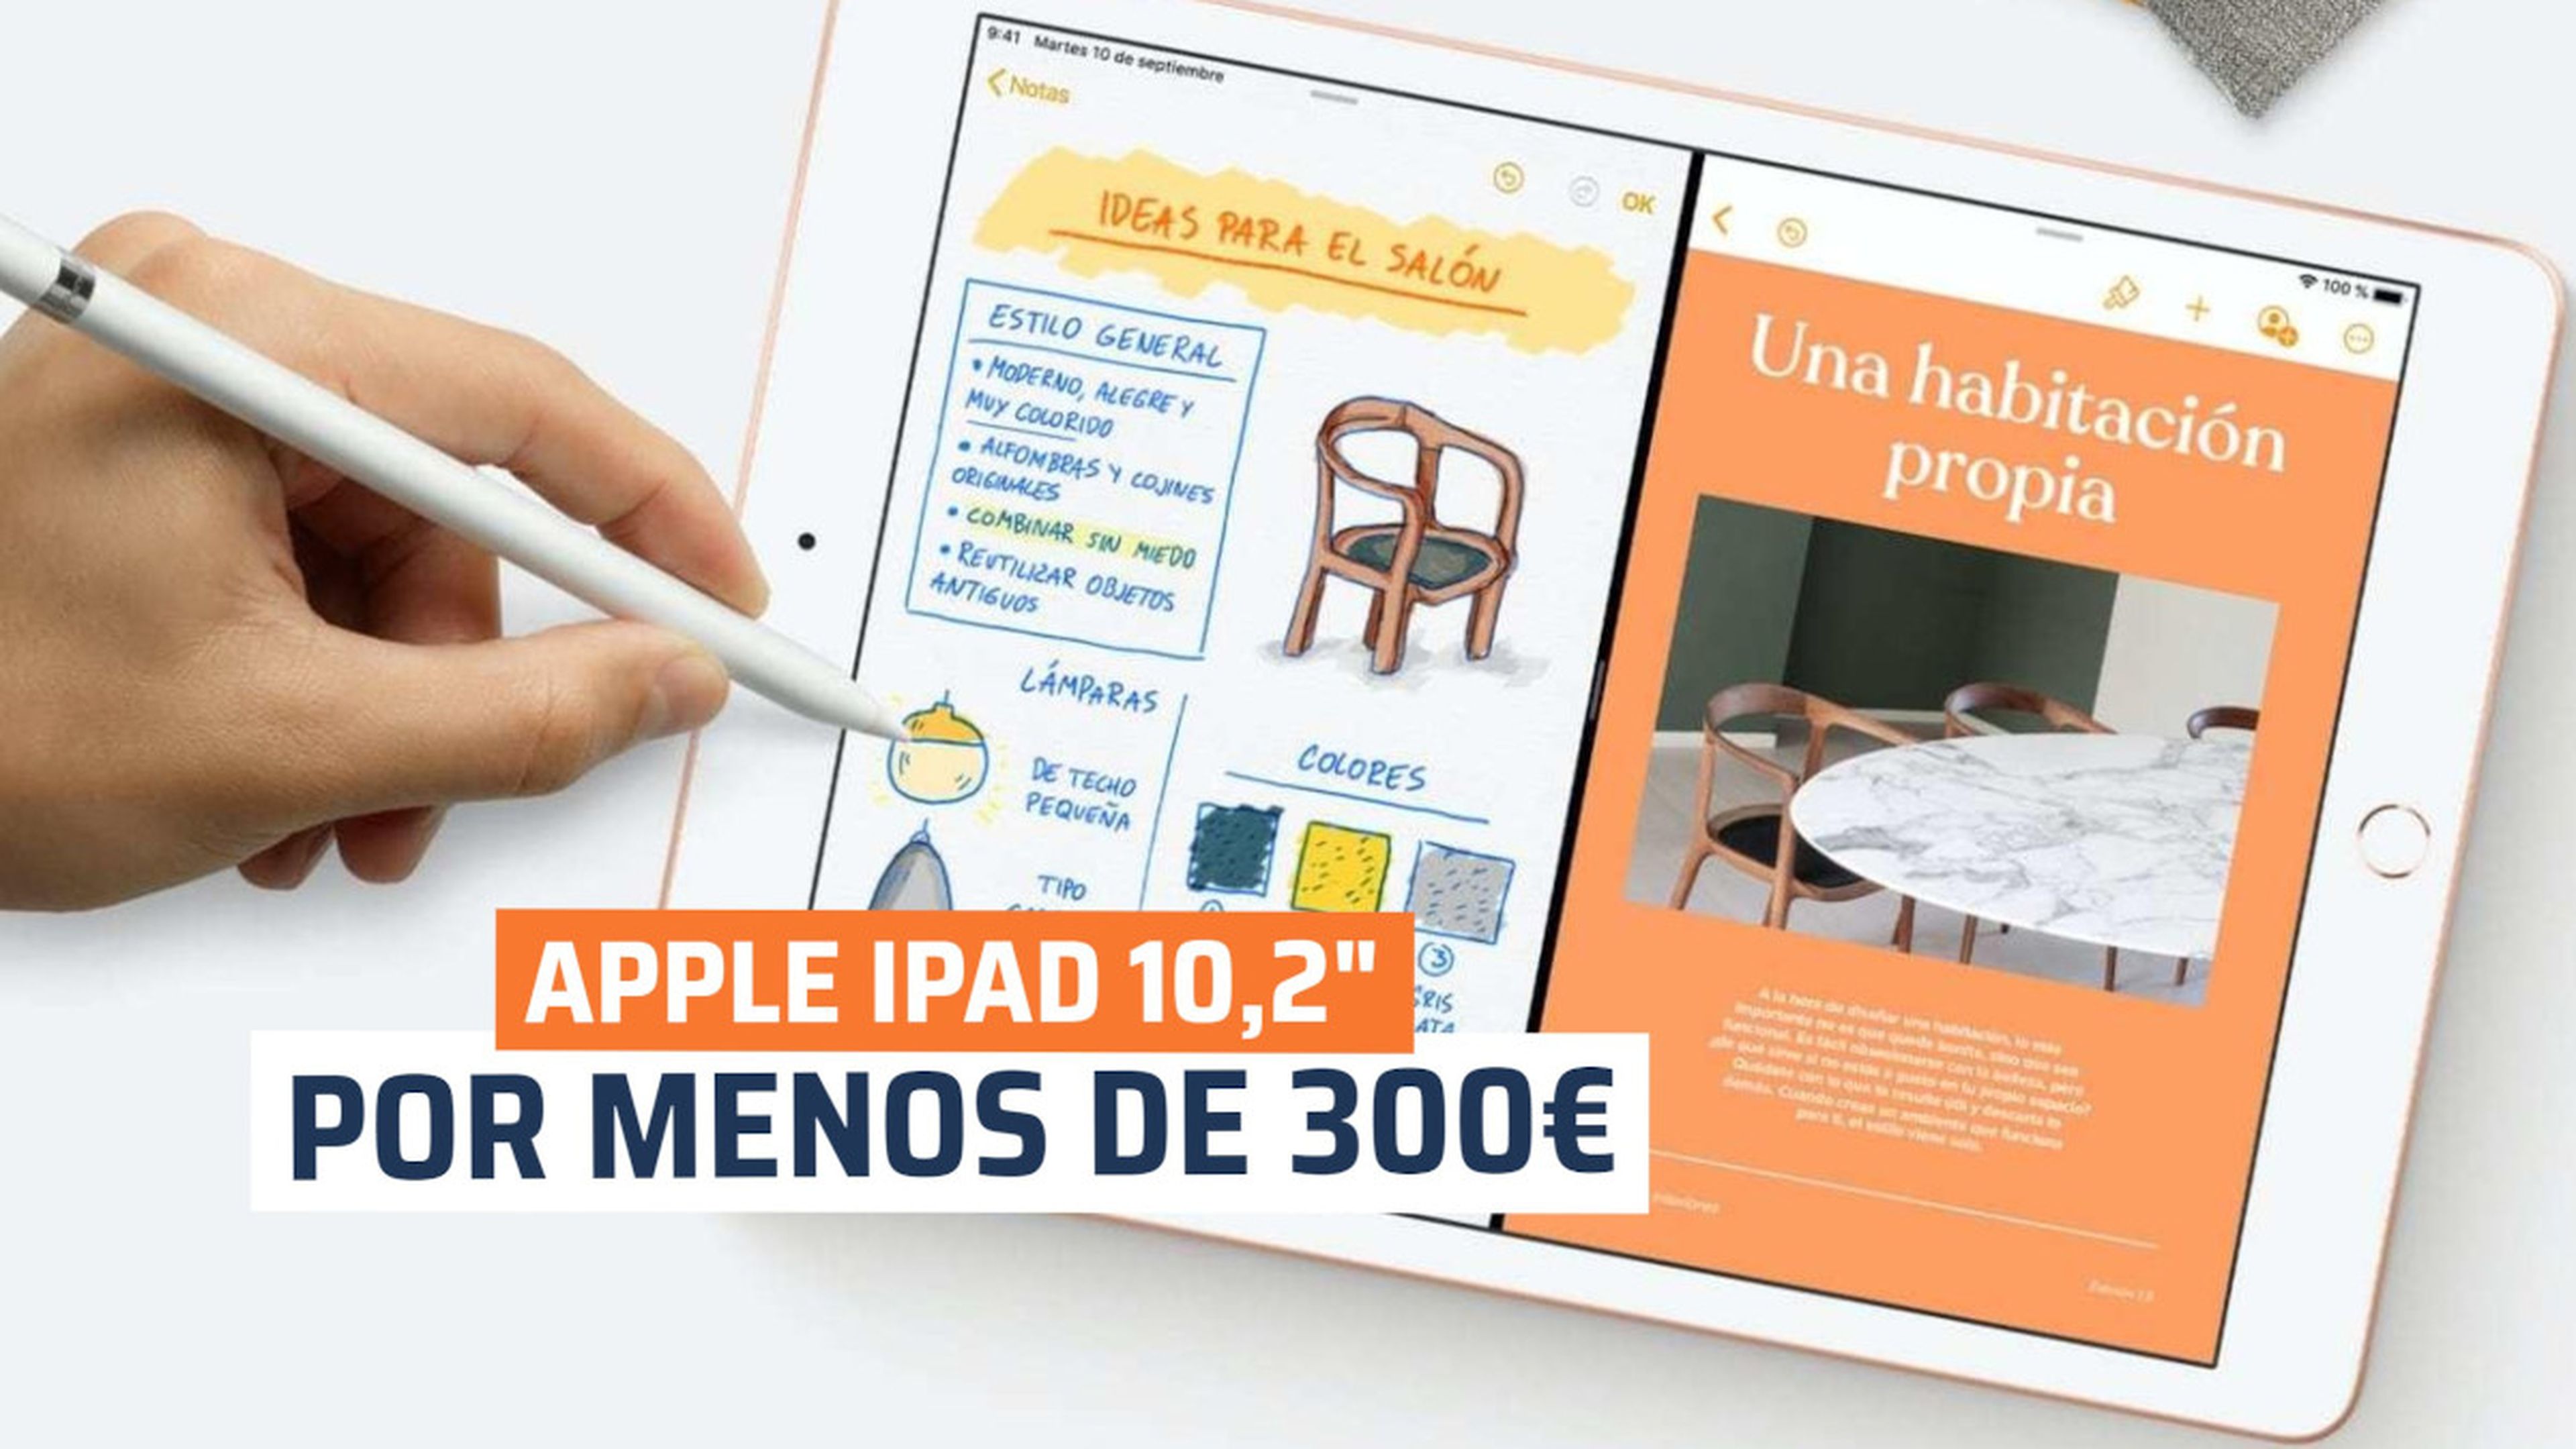 Apple iPad 10,2 oferta